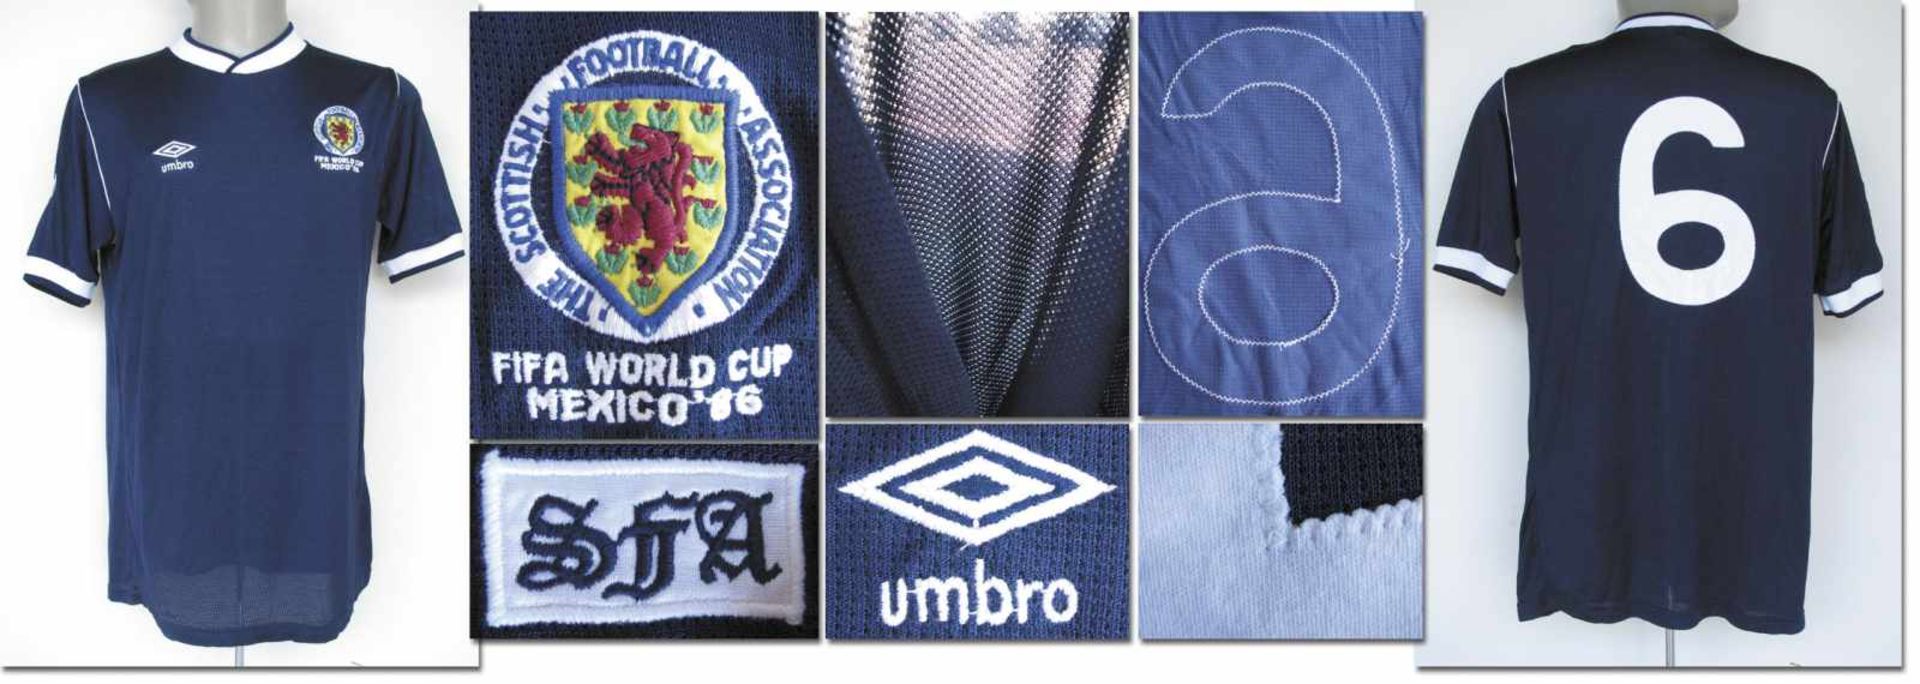 World Cup 1986 match worn football shirt Scotland - Original match worn shirt Scotland with number